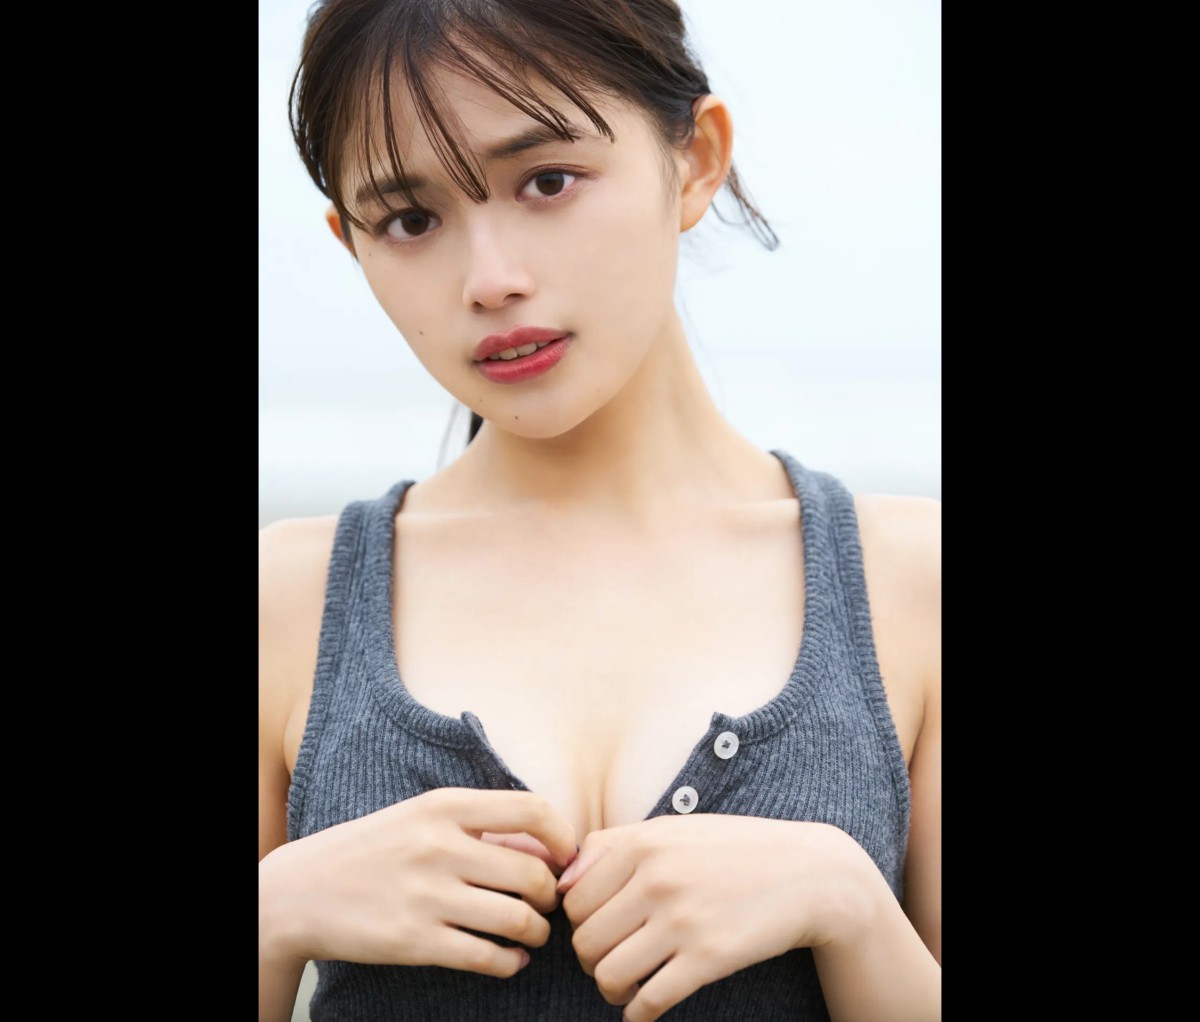 FRIDAYデジタル写真集 Hinami Mori 森日菜美 Seaside Girl Full Version 0032 2129854461.jpg